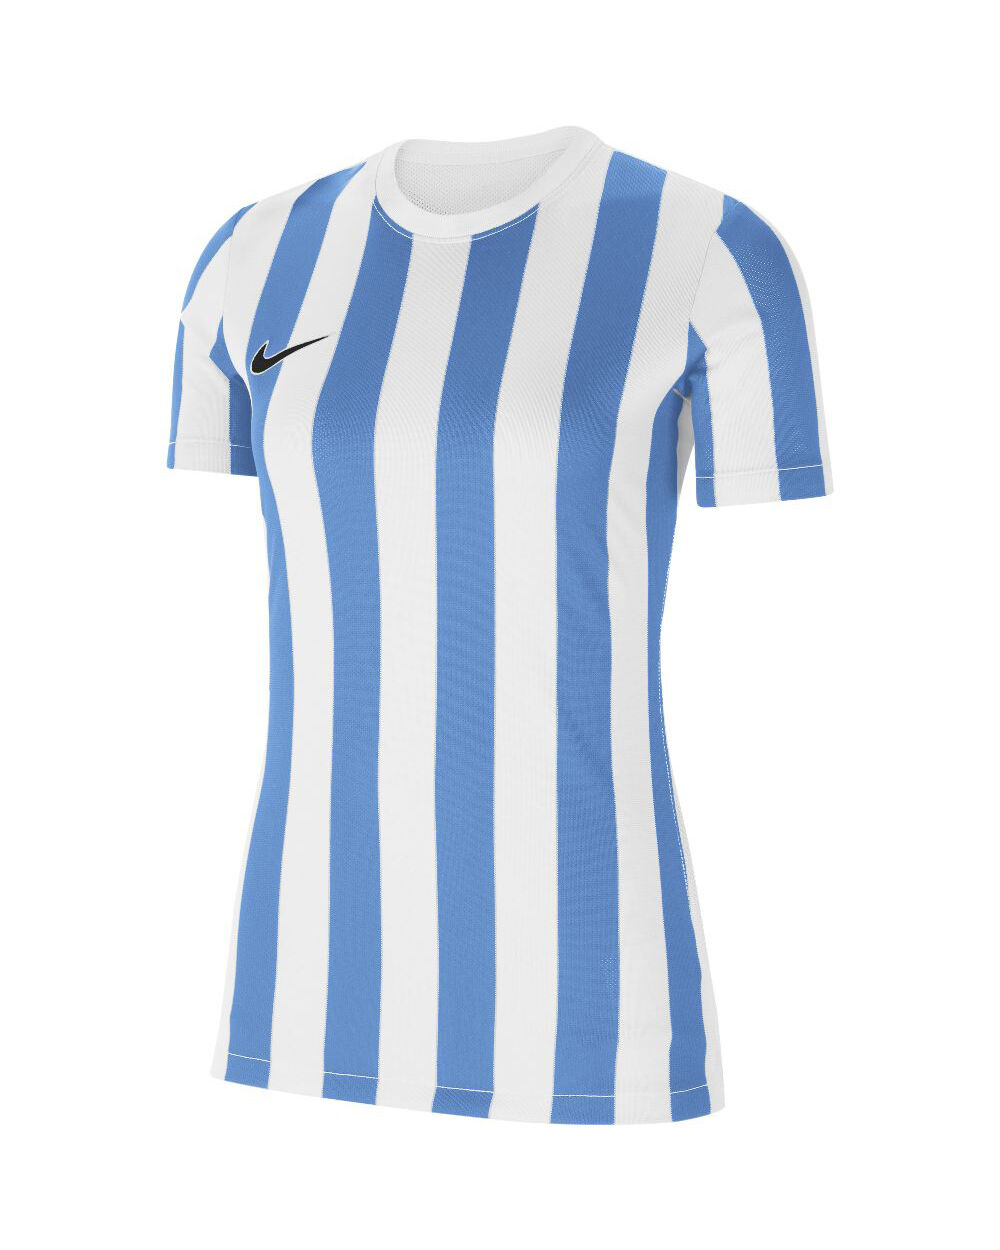 Nike Maglia Striped Division IV Bianco e Blu Bianco per Donne CW3816-103 M